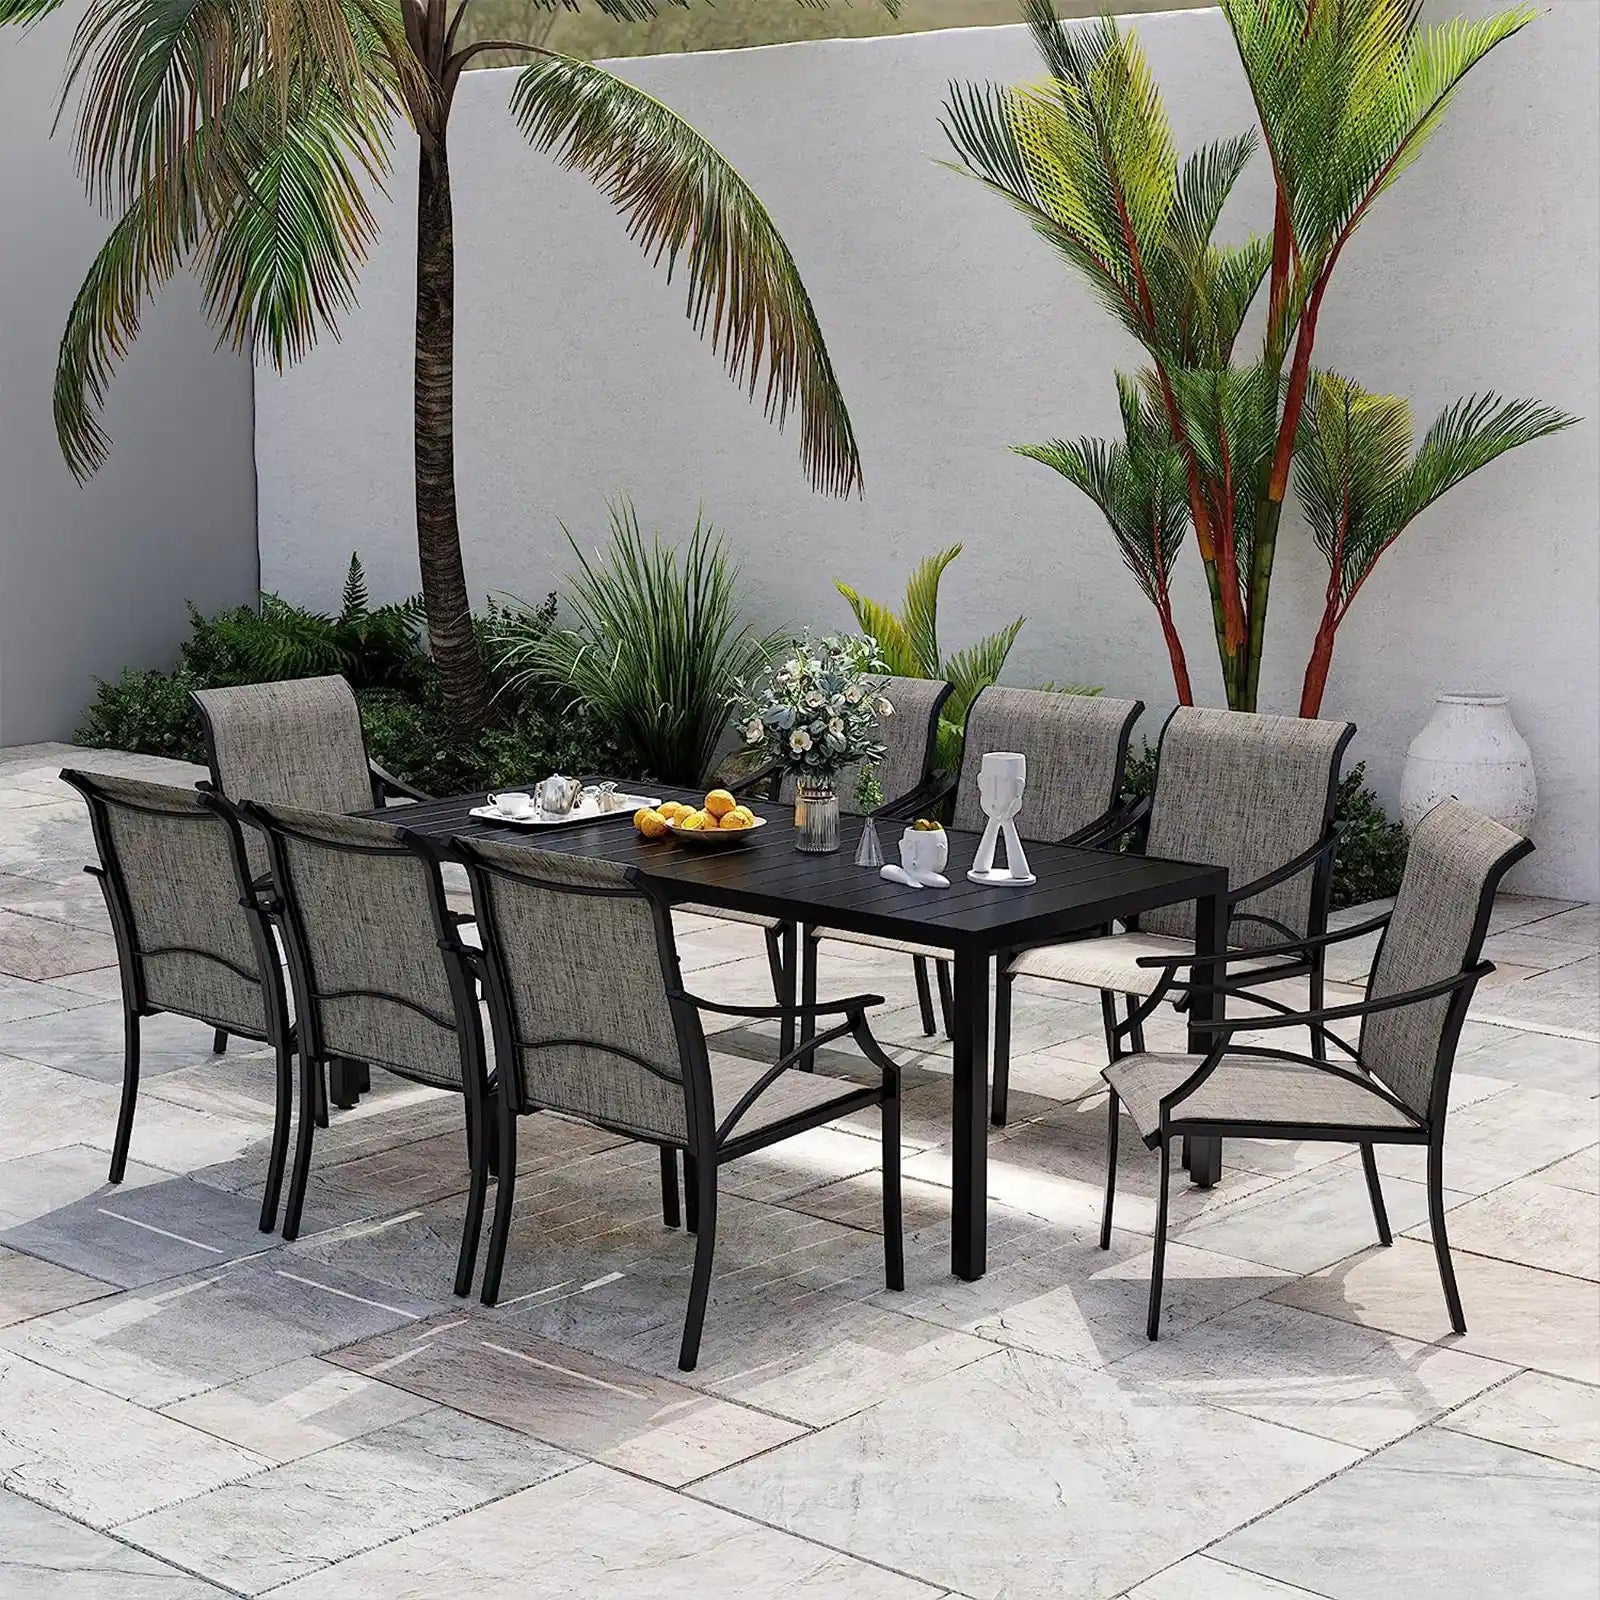 Expandable Patio Table, Metal Rectangle Outdoor Dining Table for 8, 6, 4 Person, Patio Dining Table for Lawn Garden